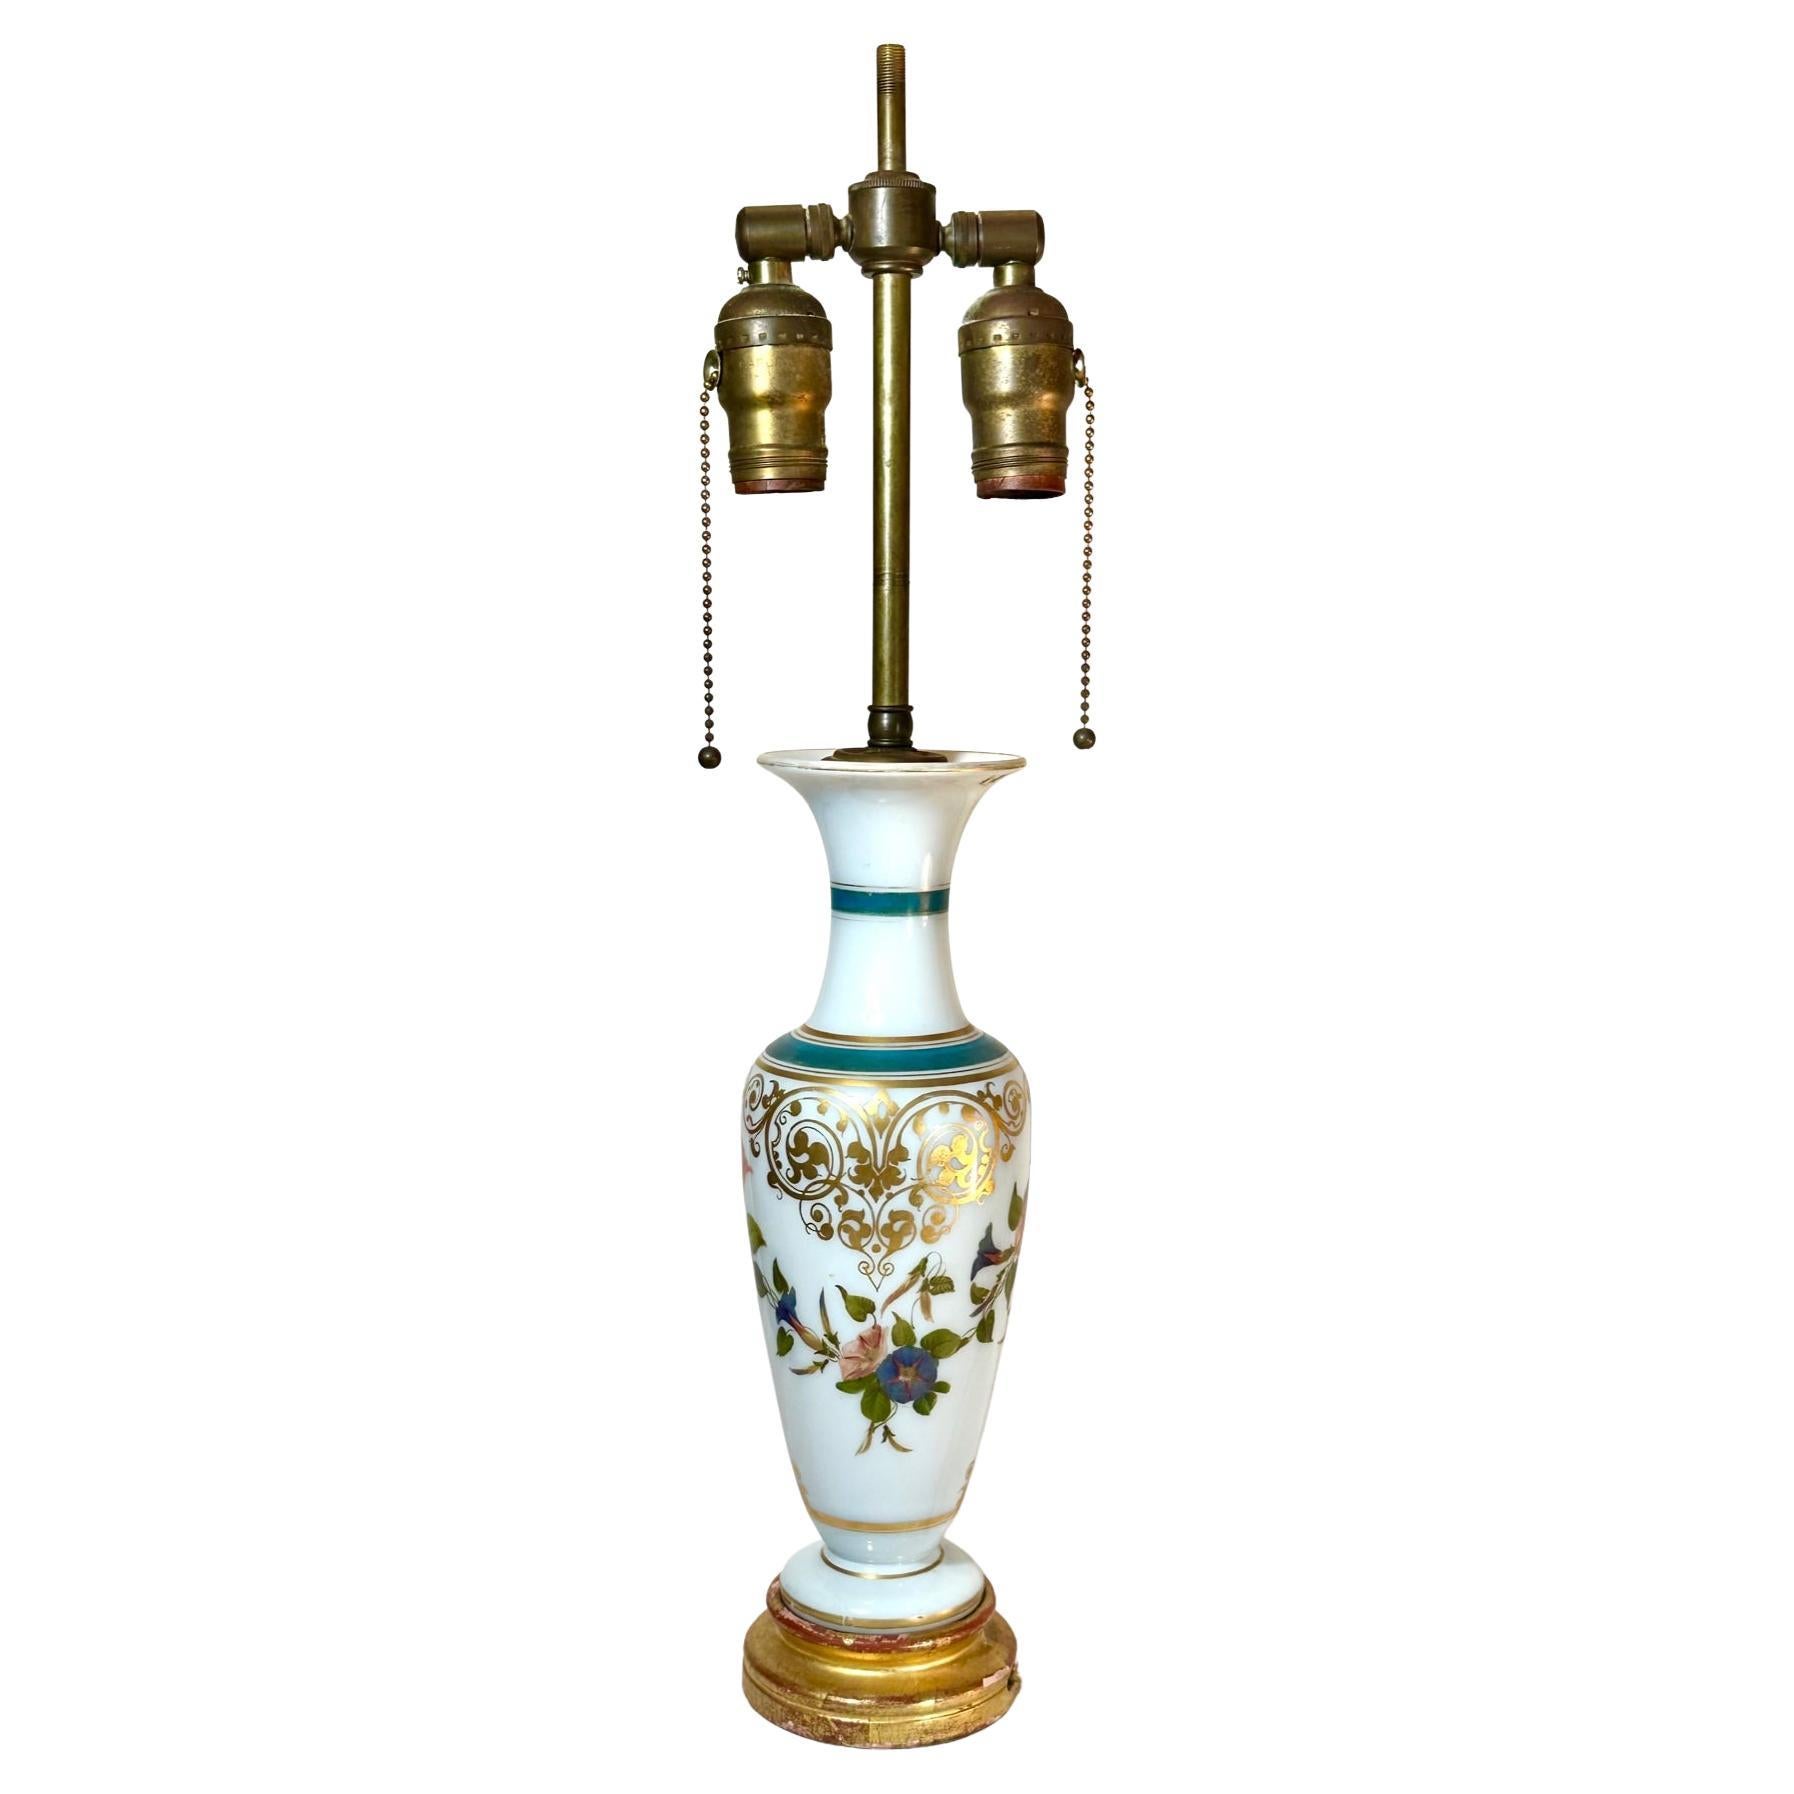 Vasenlampe aus weißem Opalglas, Baccarat zugeschrieben.